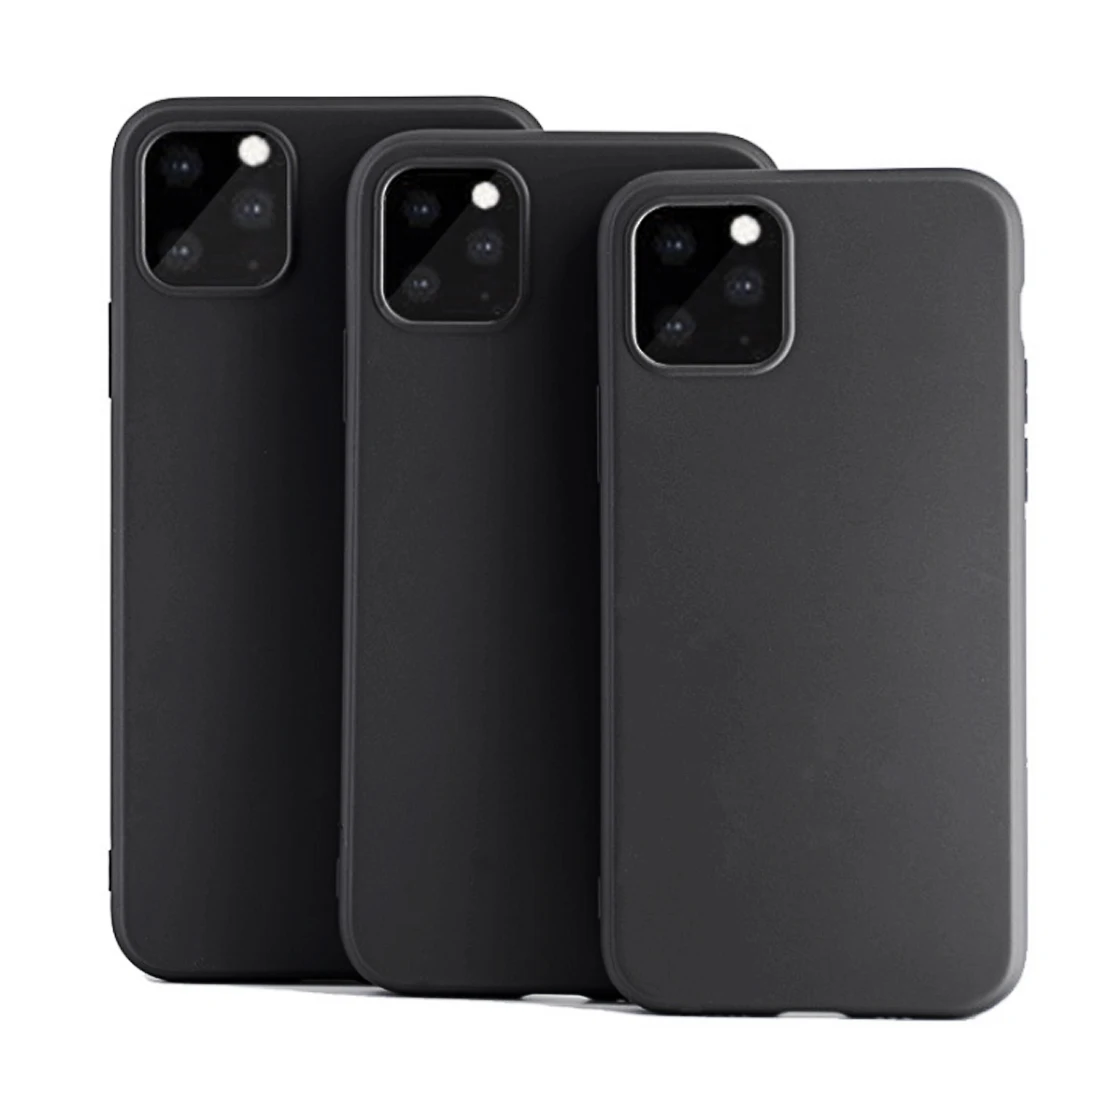 Вашингтон Александр Овечкин чехол для телефона серии черного цвета из мягкой искусственной кожи(термополиуретан) для iPhone 11 Pro Max 6s 7 8 плюс 5S X XS XR XSMax